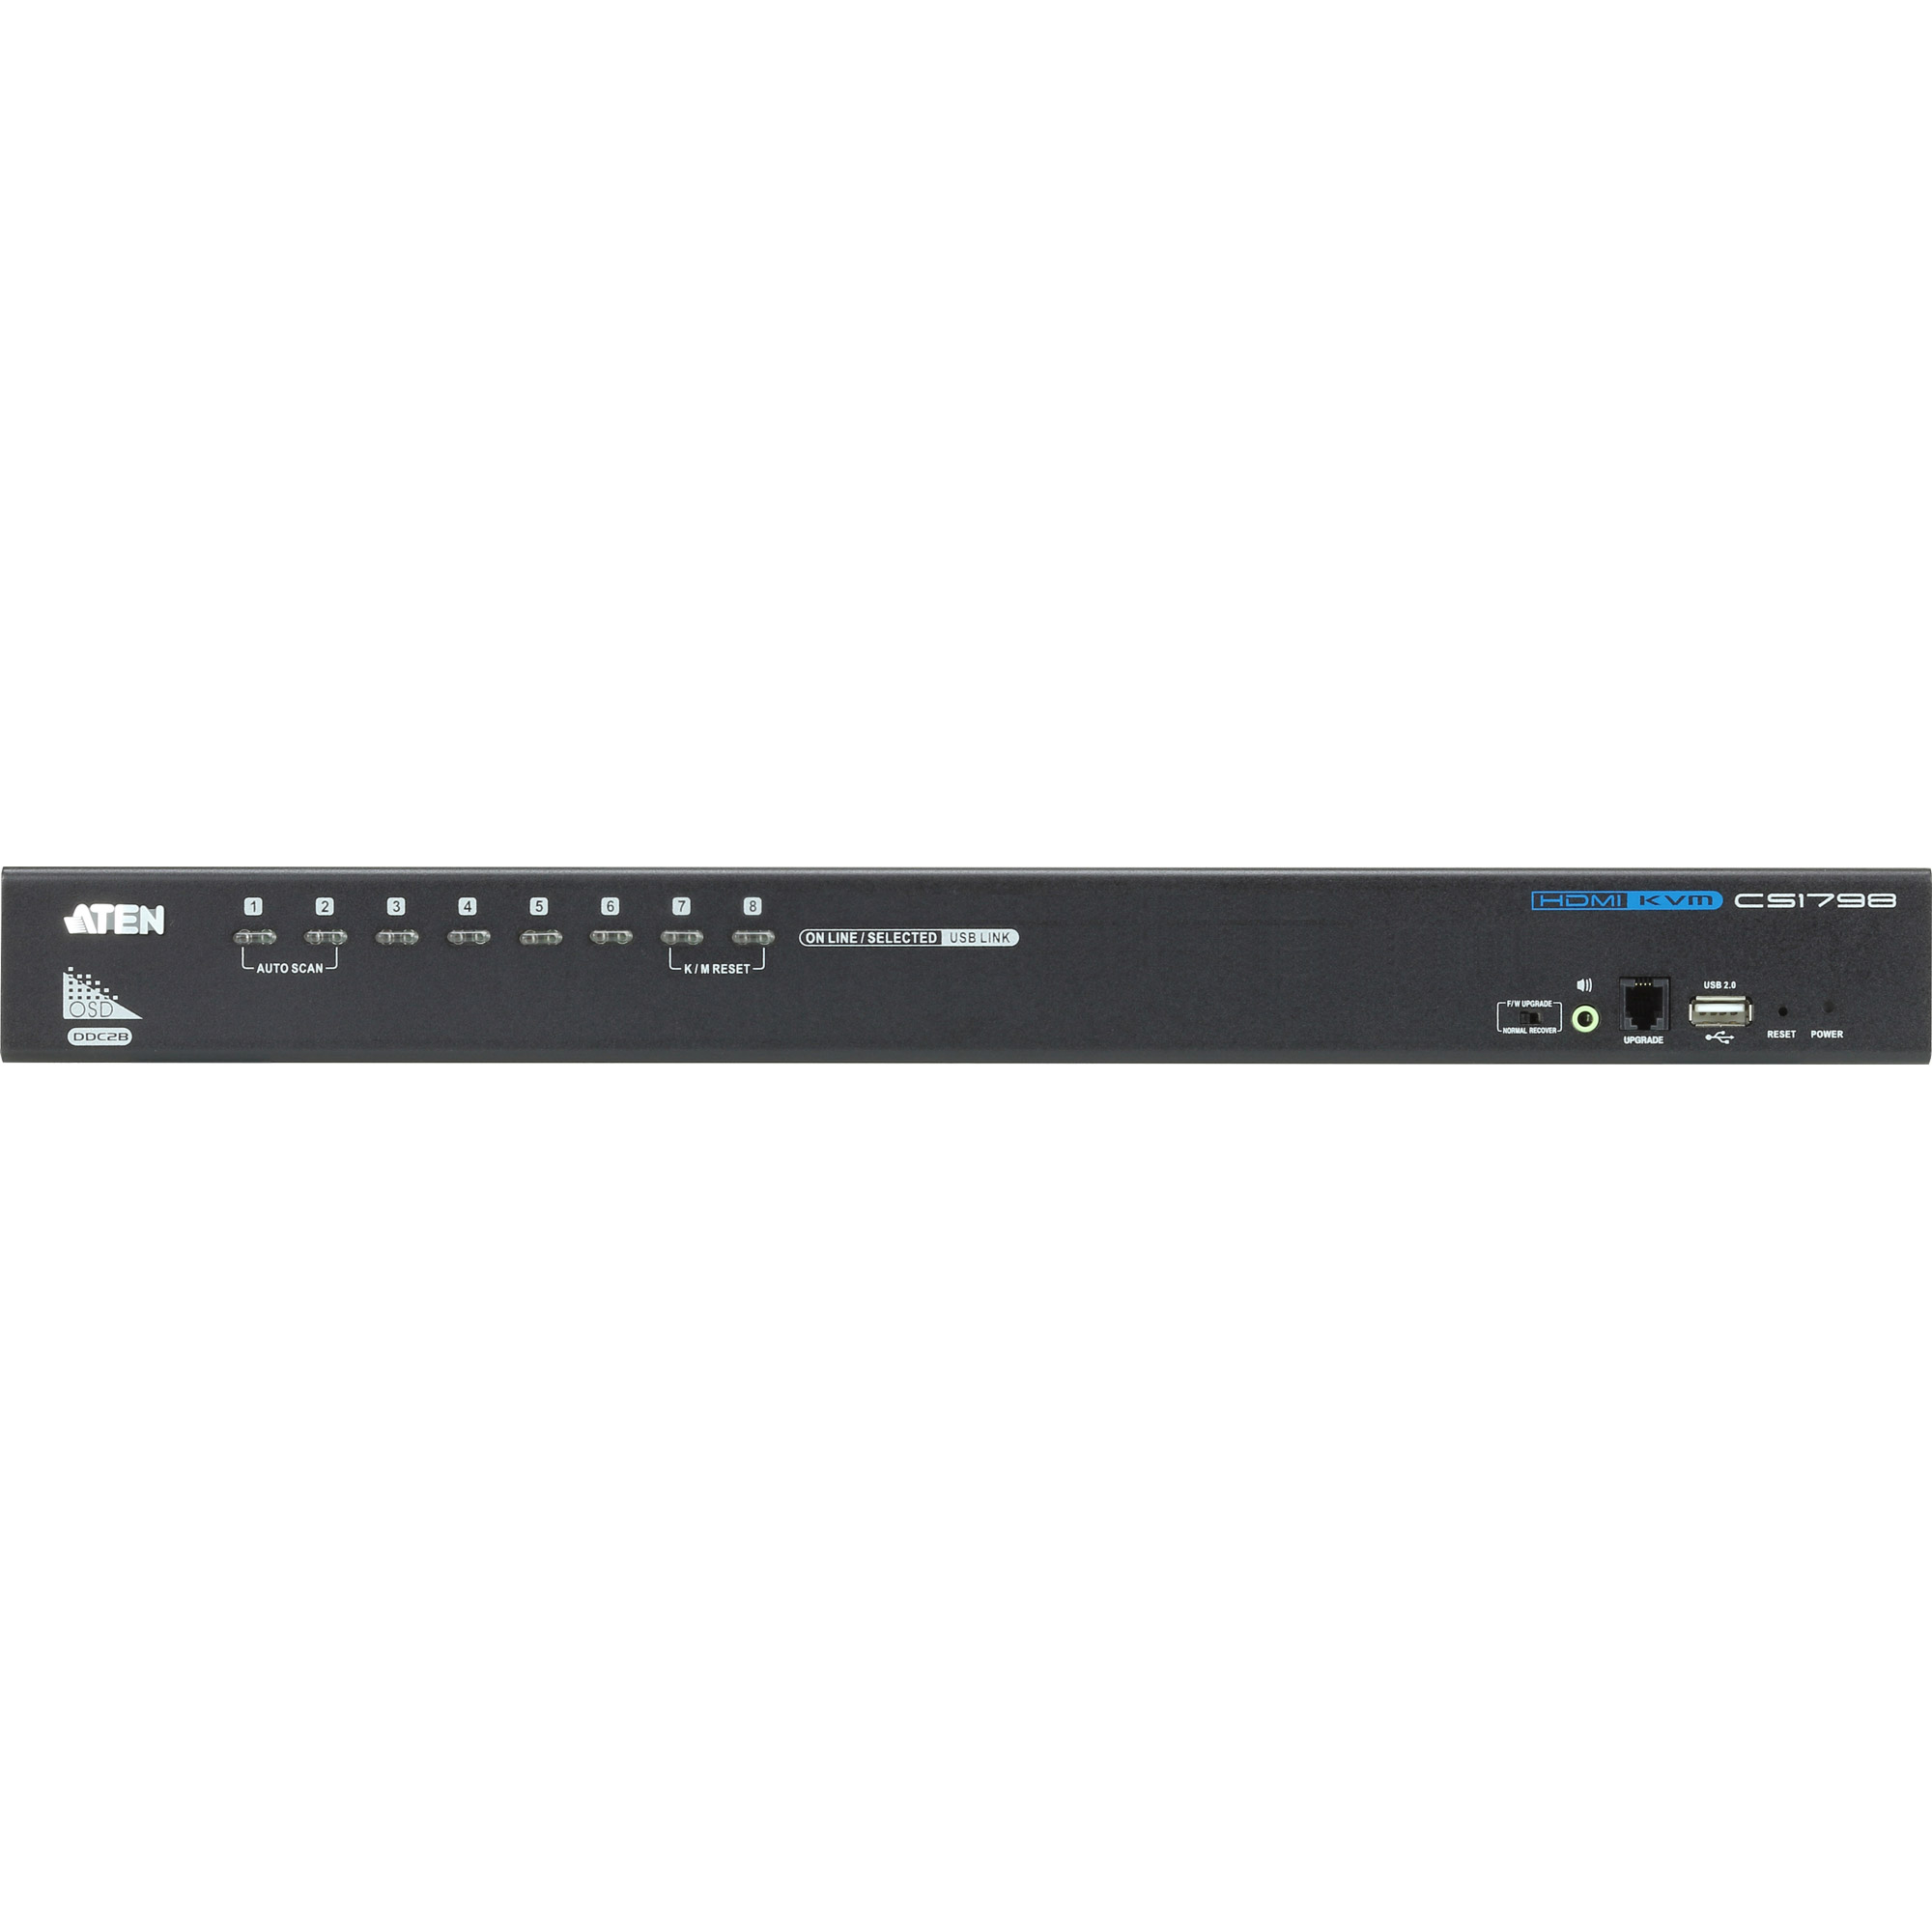 ATEN CS1798 - KVM-/Audio-/USB-Switch - 8 Anschlüsse - an Rack montierbar